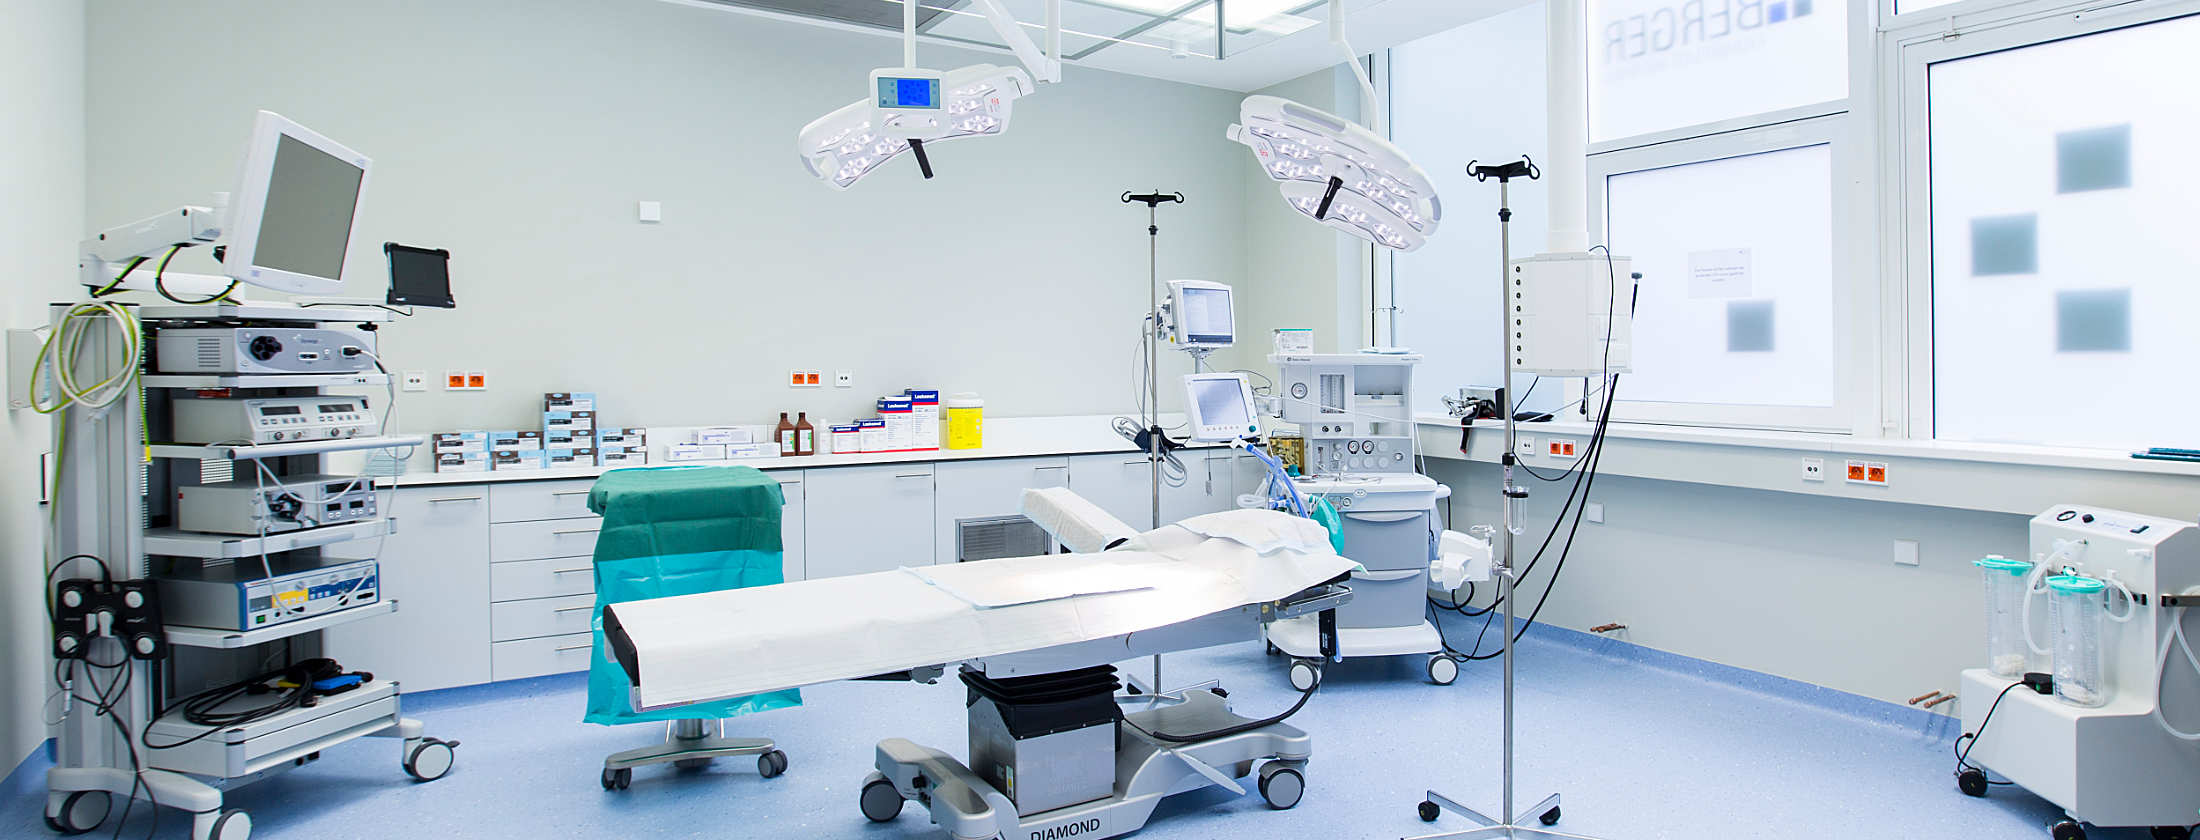 Современный оборудованный зал хирургии клиники Бергер для международных пациентов в Германии. Пациент лежит на операционном столе. Все вокруг медицинских специалистов и косметического хирурга доступно. Операция продолжается без осложнений.